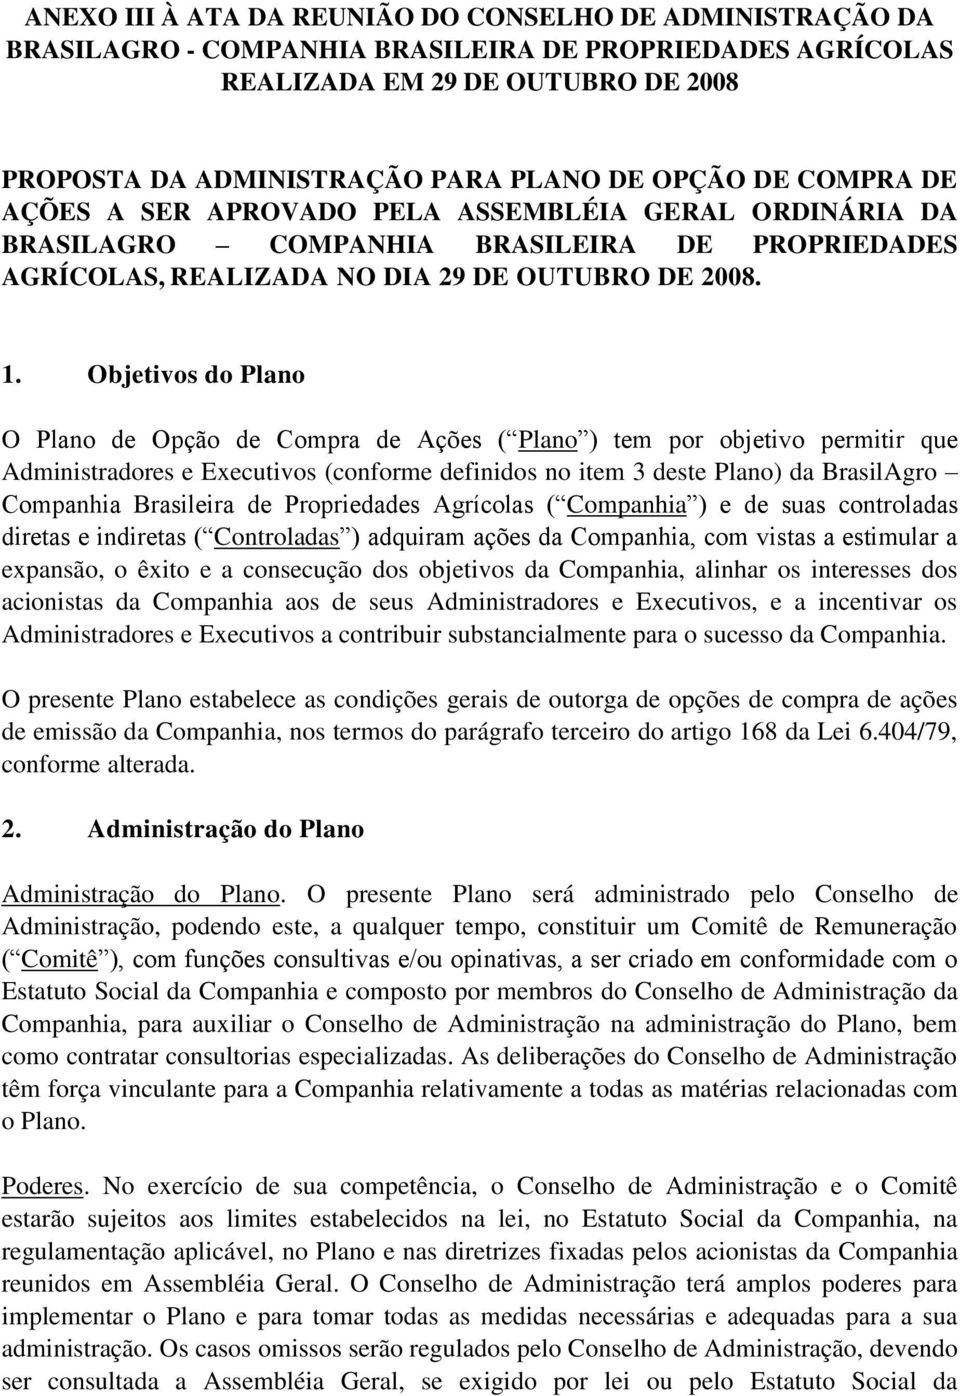 Objetivos do Plano O Plano de Opção de Compra de Ações ( Plano ) tem por objetivo permitir que Administradores e Executivos (conforme definidos no item 3 deste Plano) da BrasilAgro Companhia